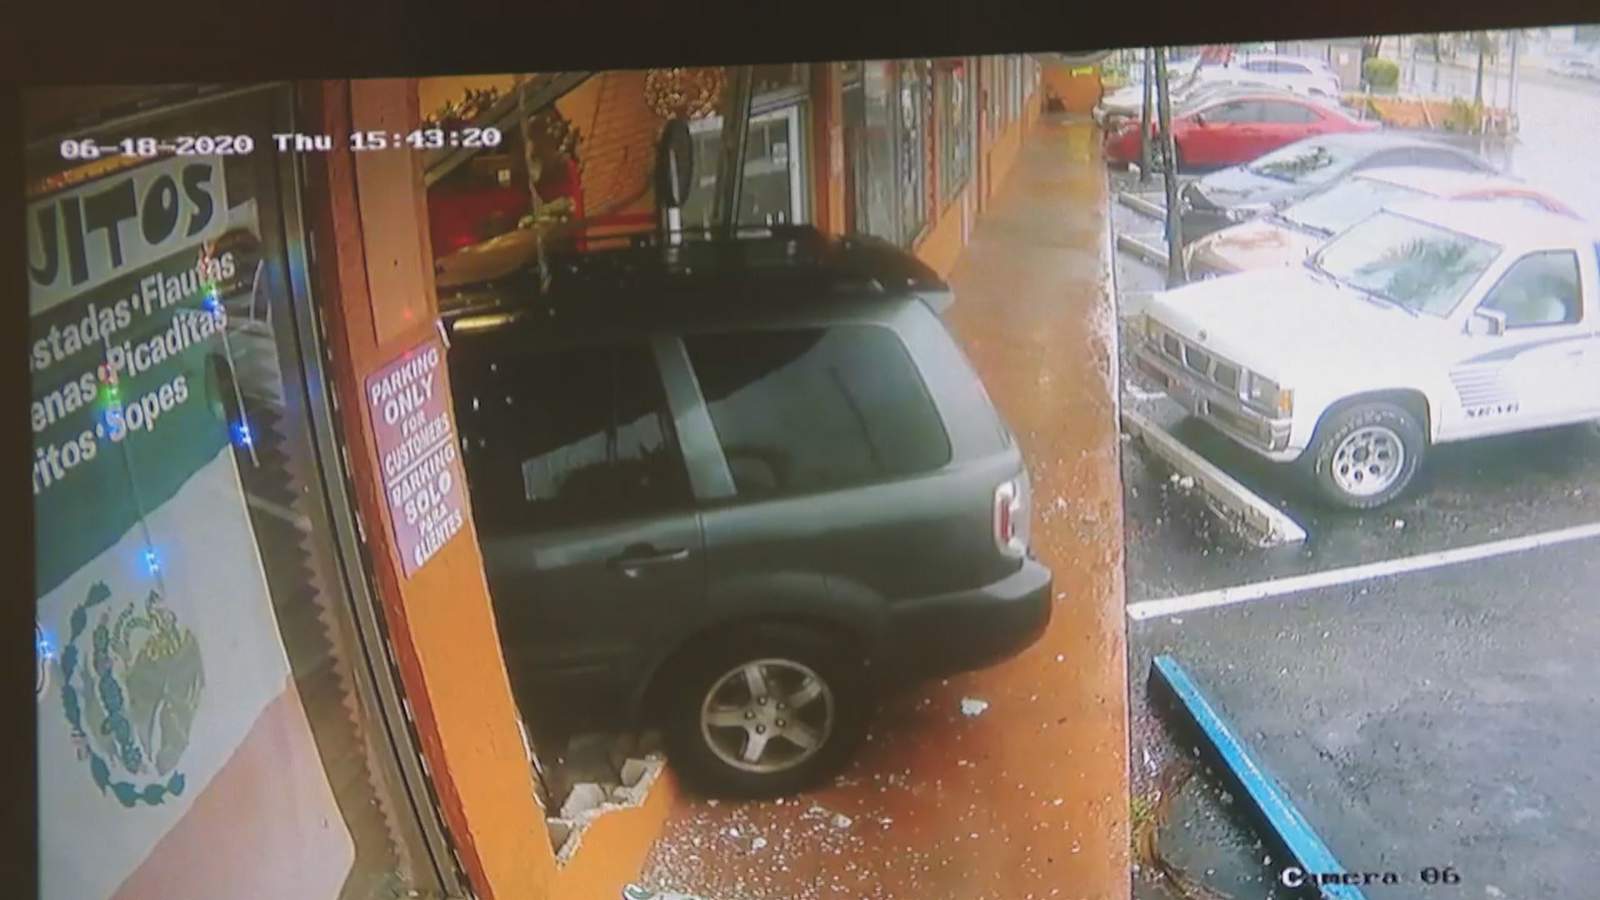 Un automóvil se estrelló contra el restaurante Antojitos Mexicanos de Fort Lauderdale, hiriendo a una persona adentro.